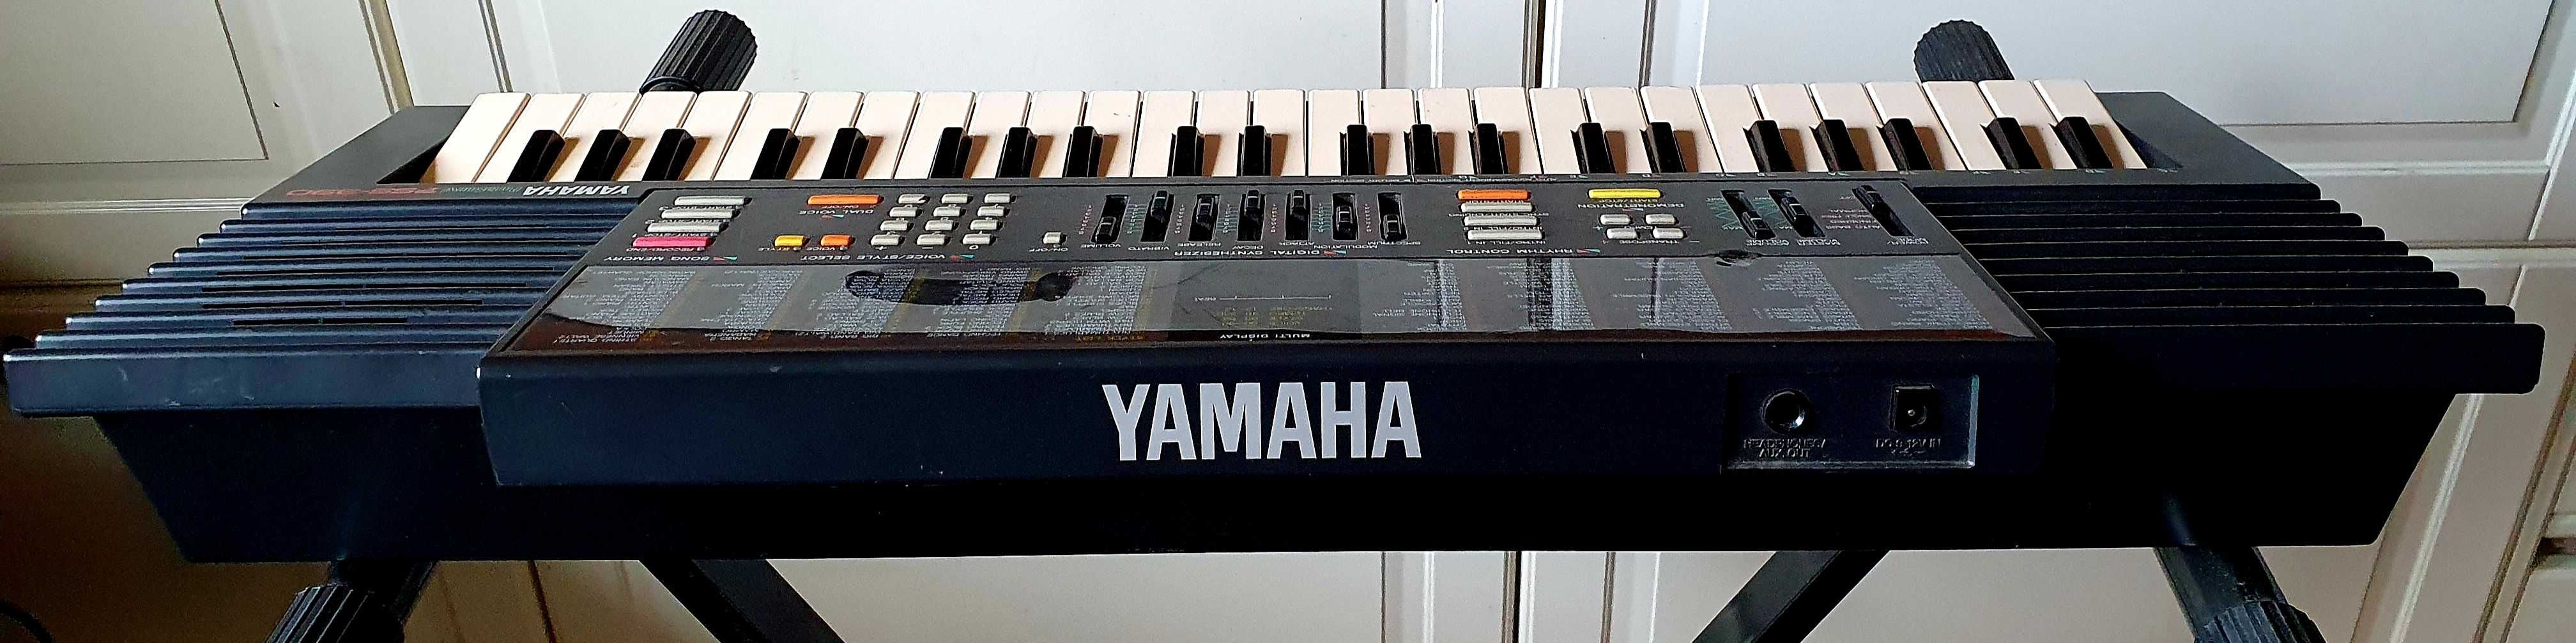 Keyboard / Syntezator Yamaha pss390